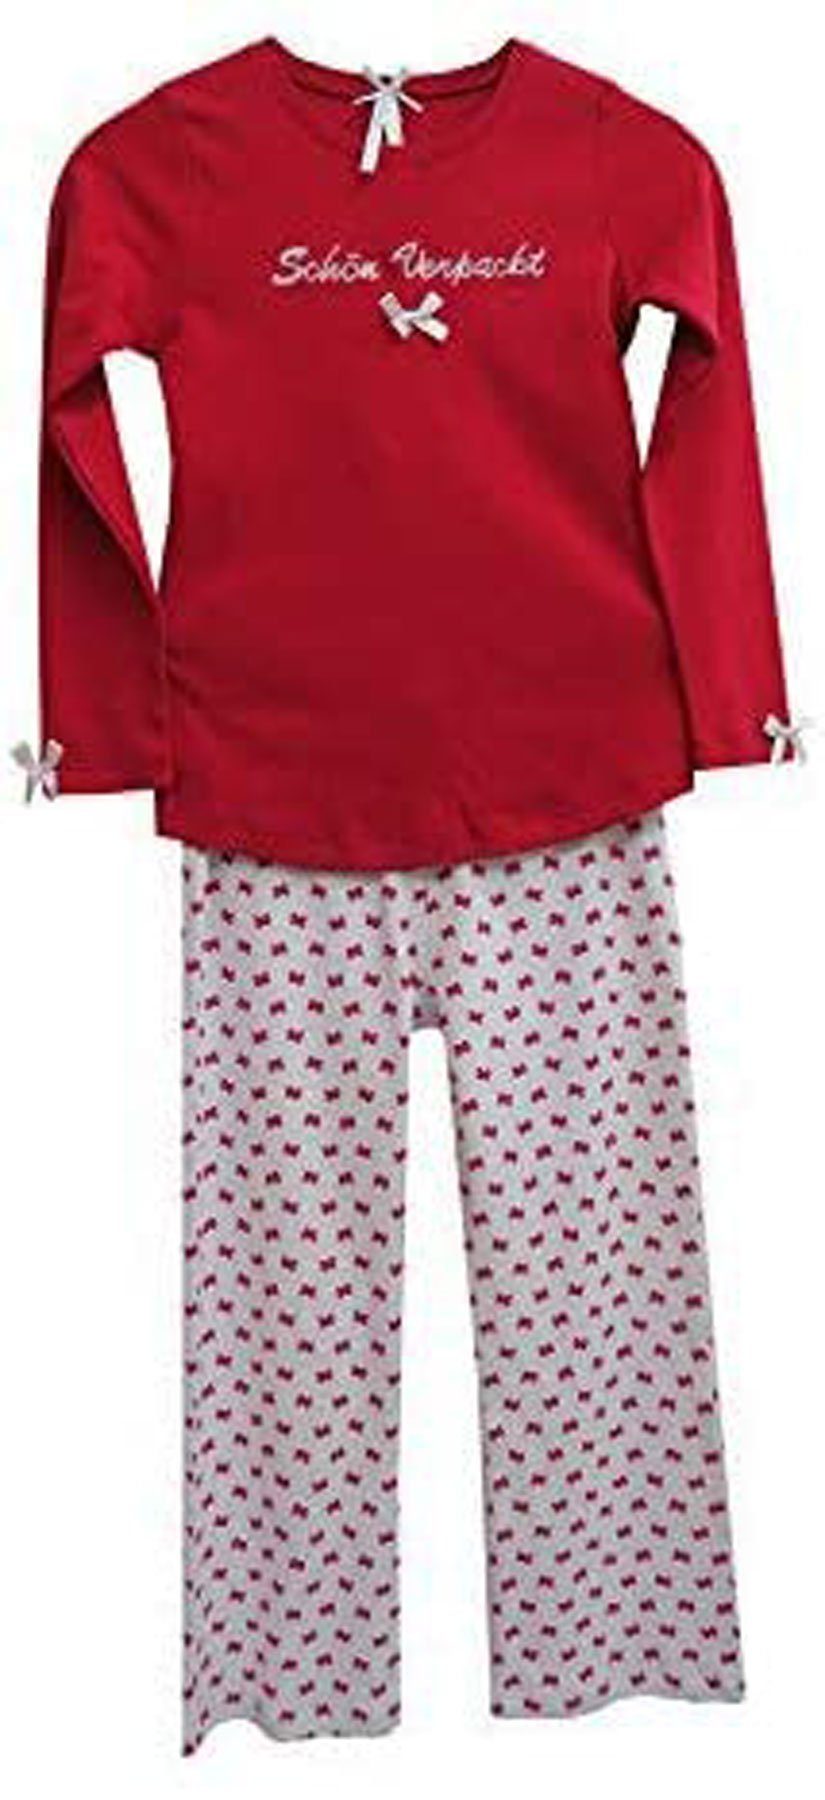 Louis & Louisa Pyjama Schön verpackt